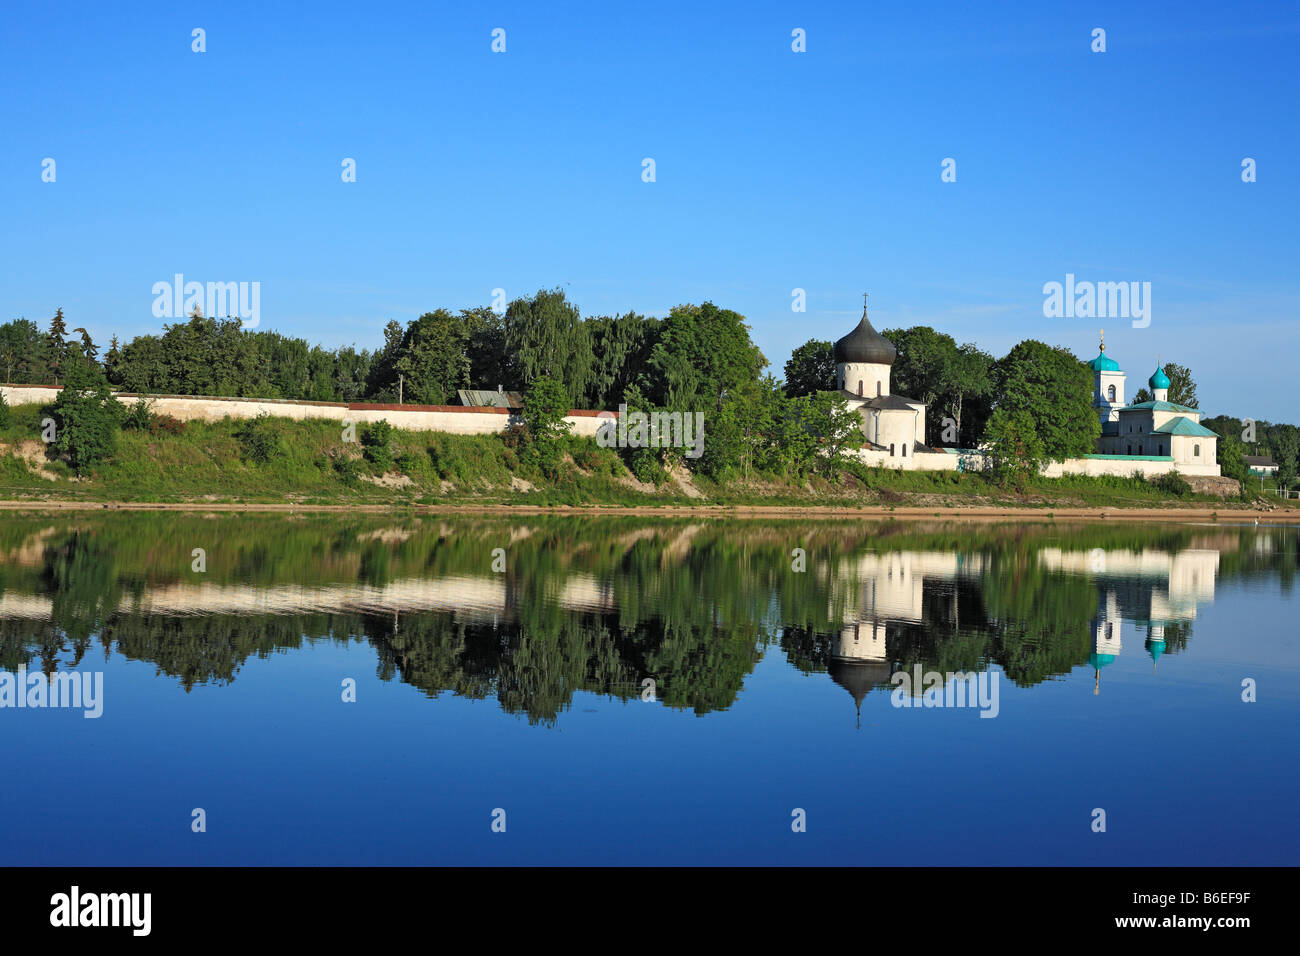 Mirozhsky monastery, view from river Velikaya, Pskov, Pskov region, Russia Stock Photo